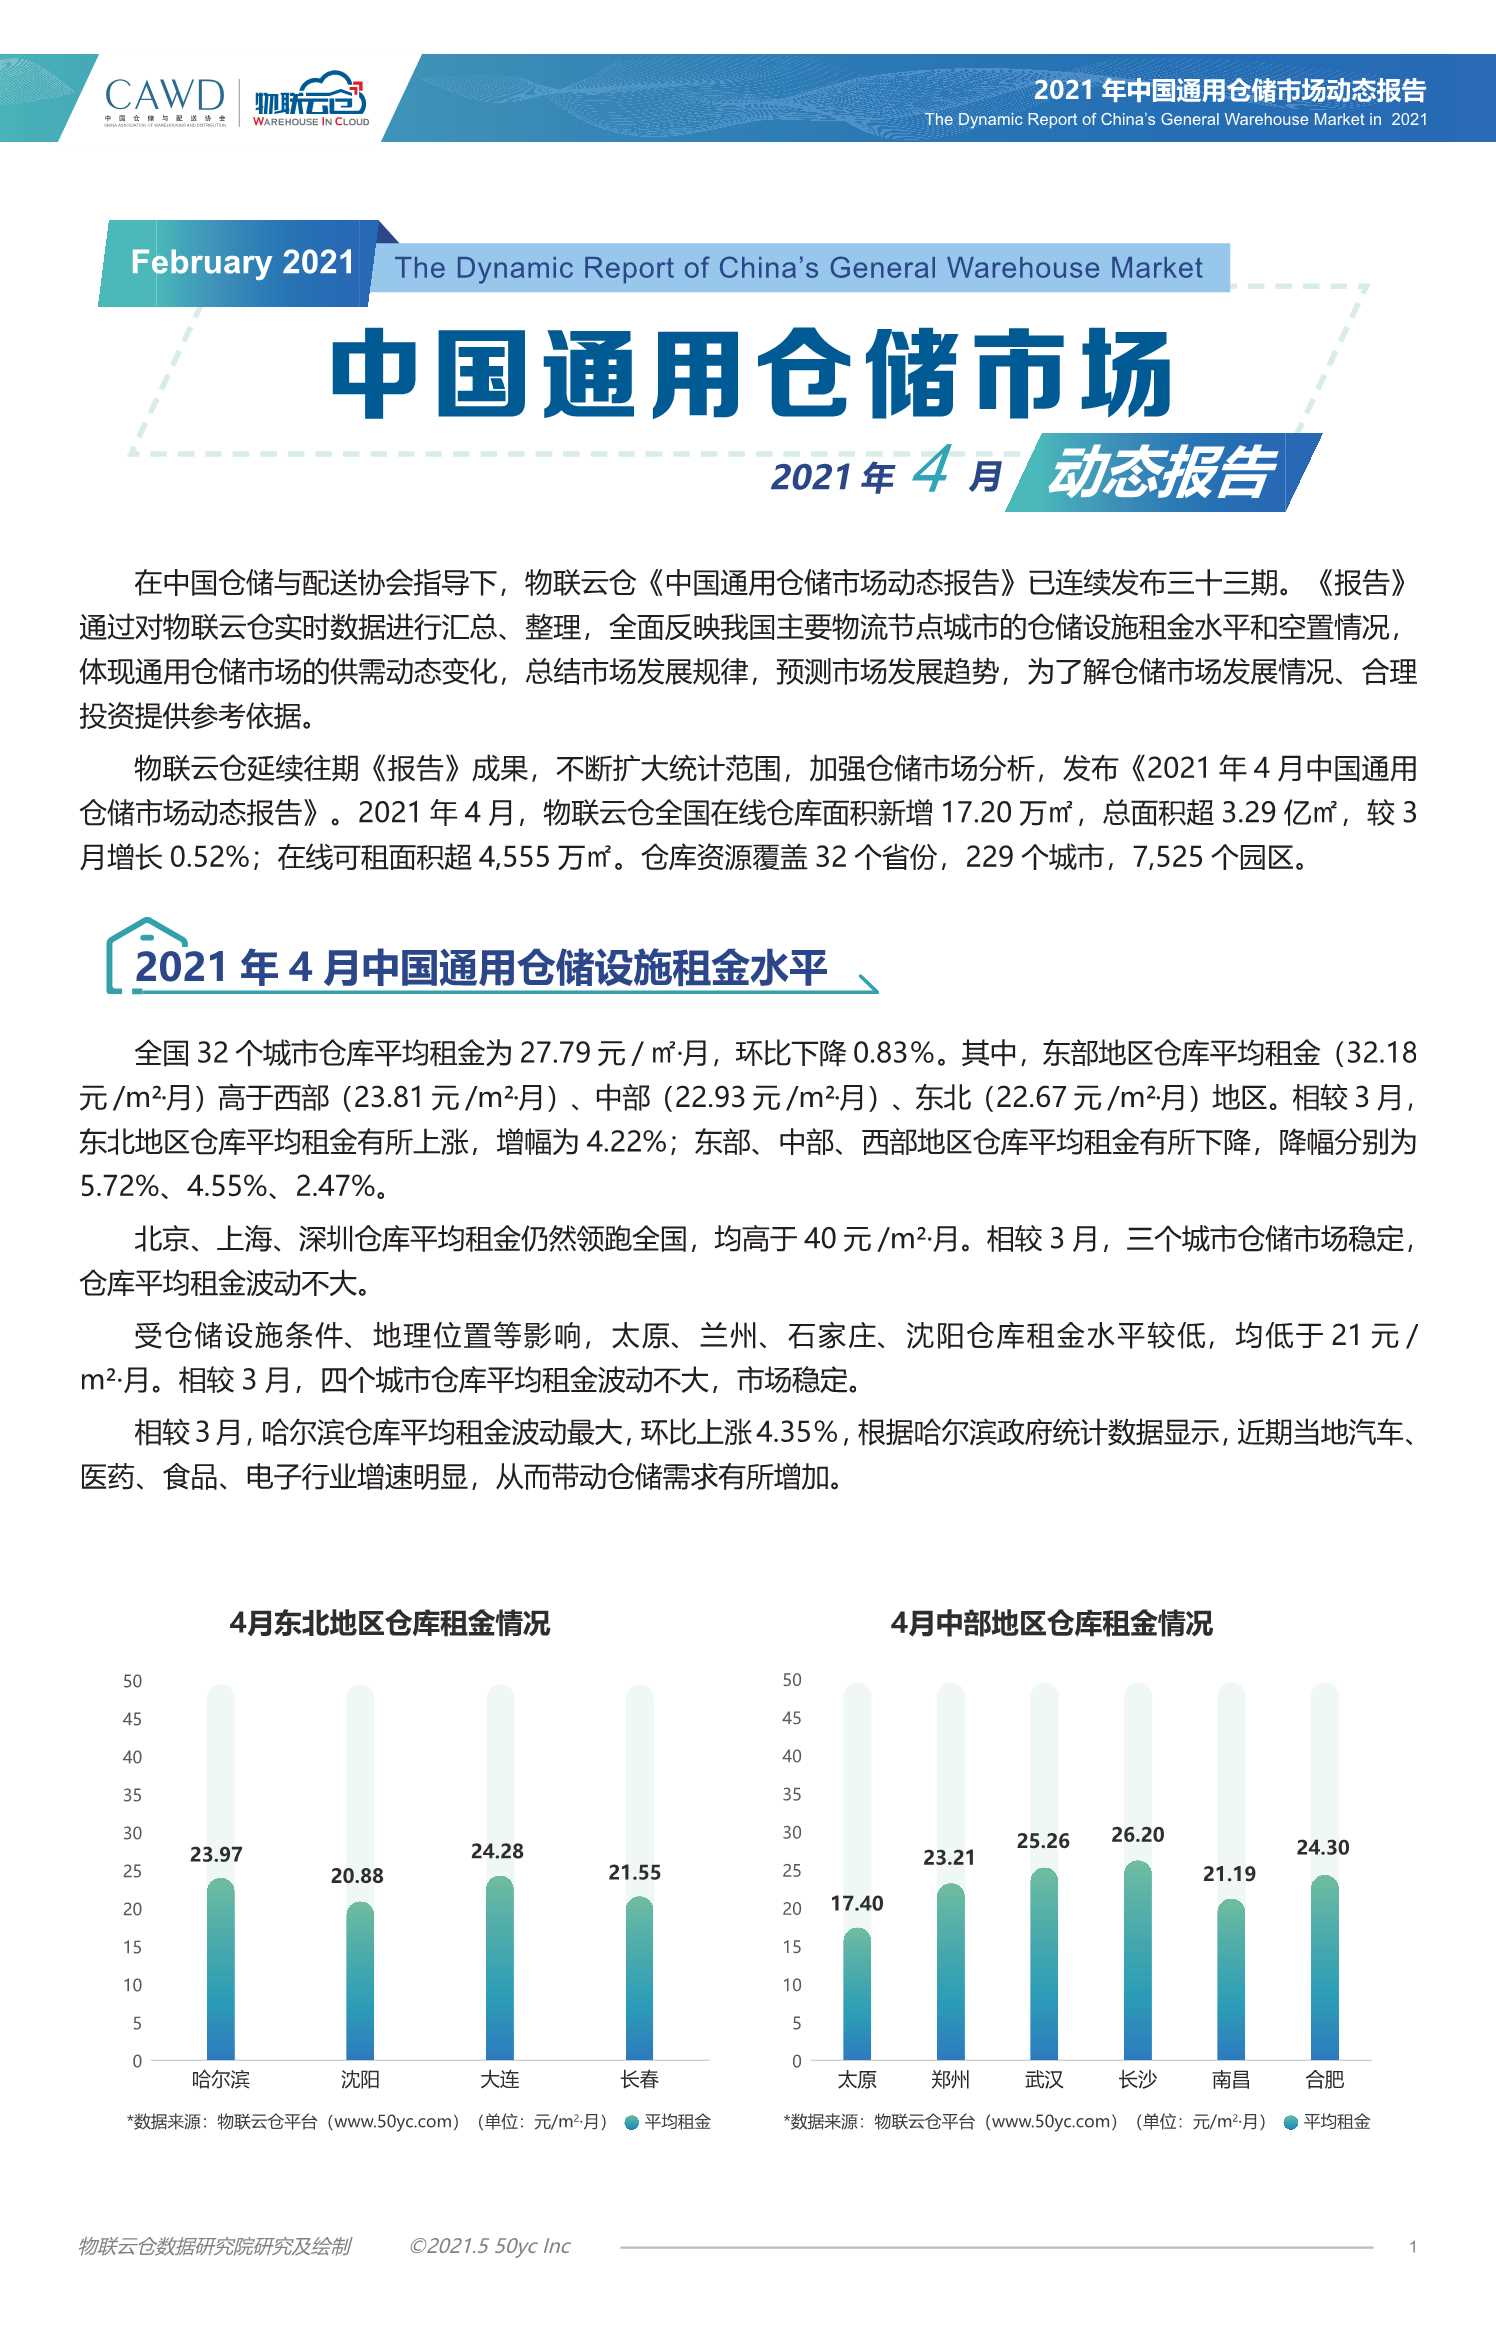 物联云仓-2021年4月中国通用仓储市场动态报告-2021.05-12页